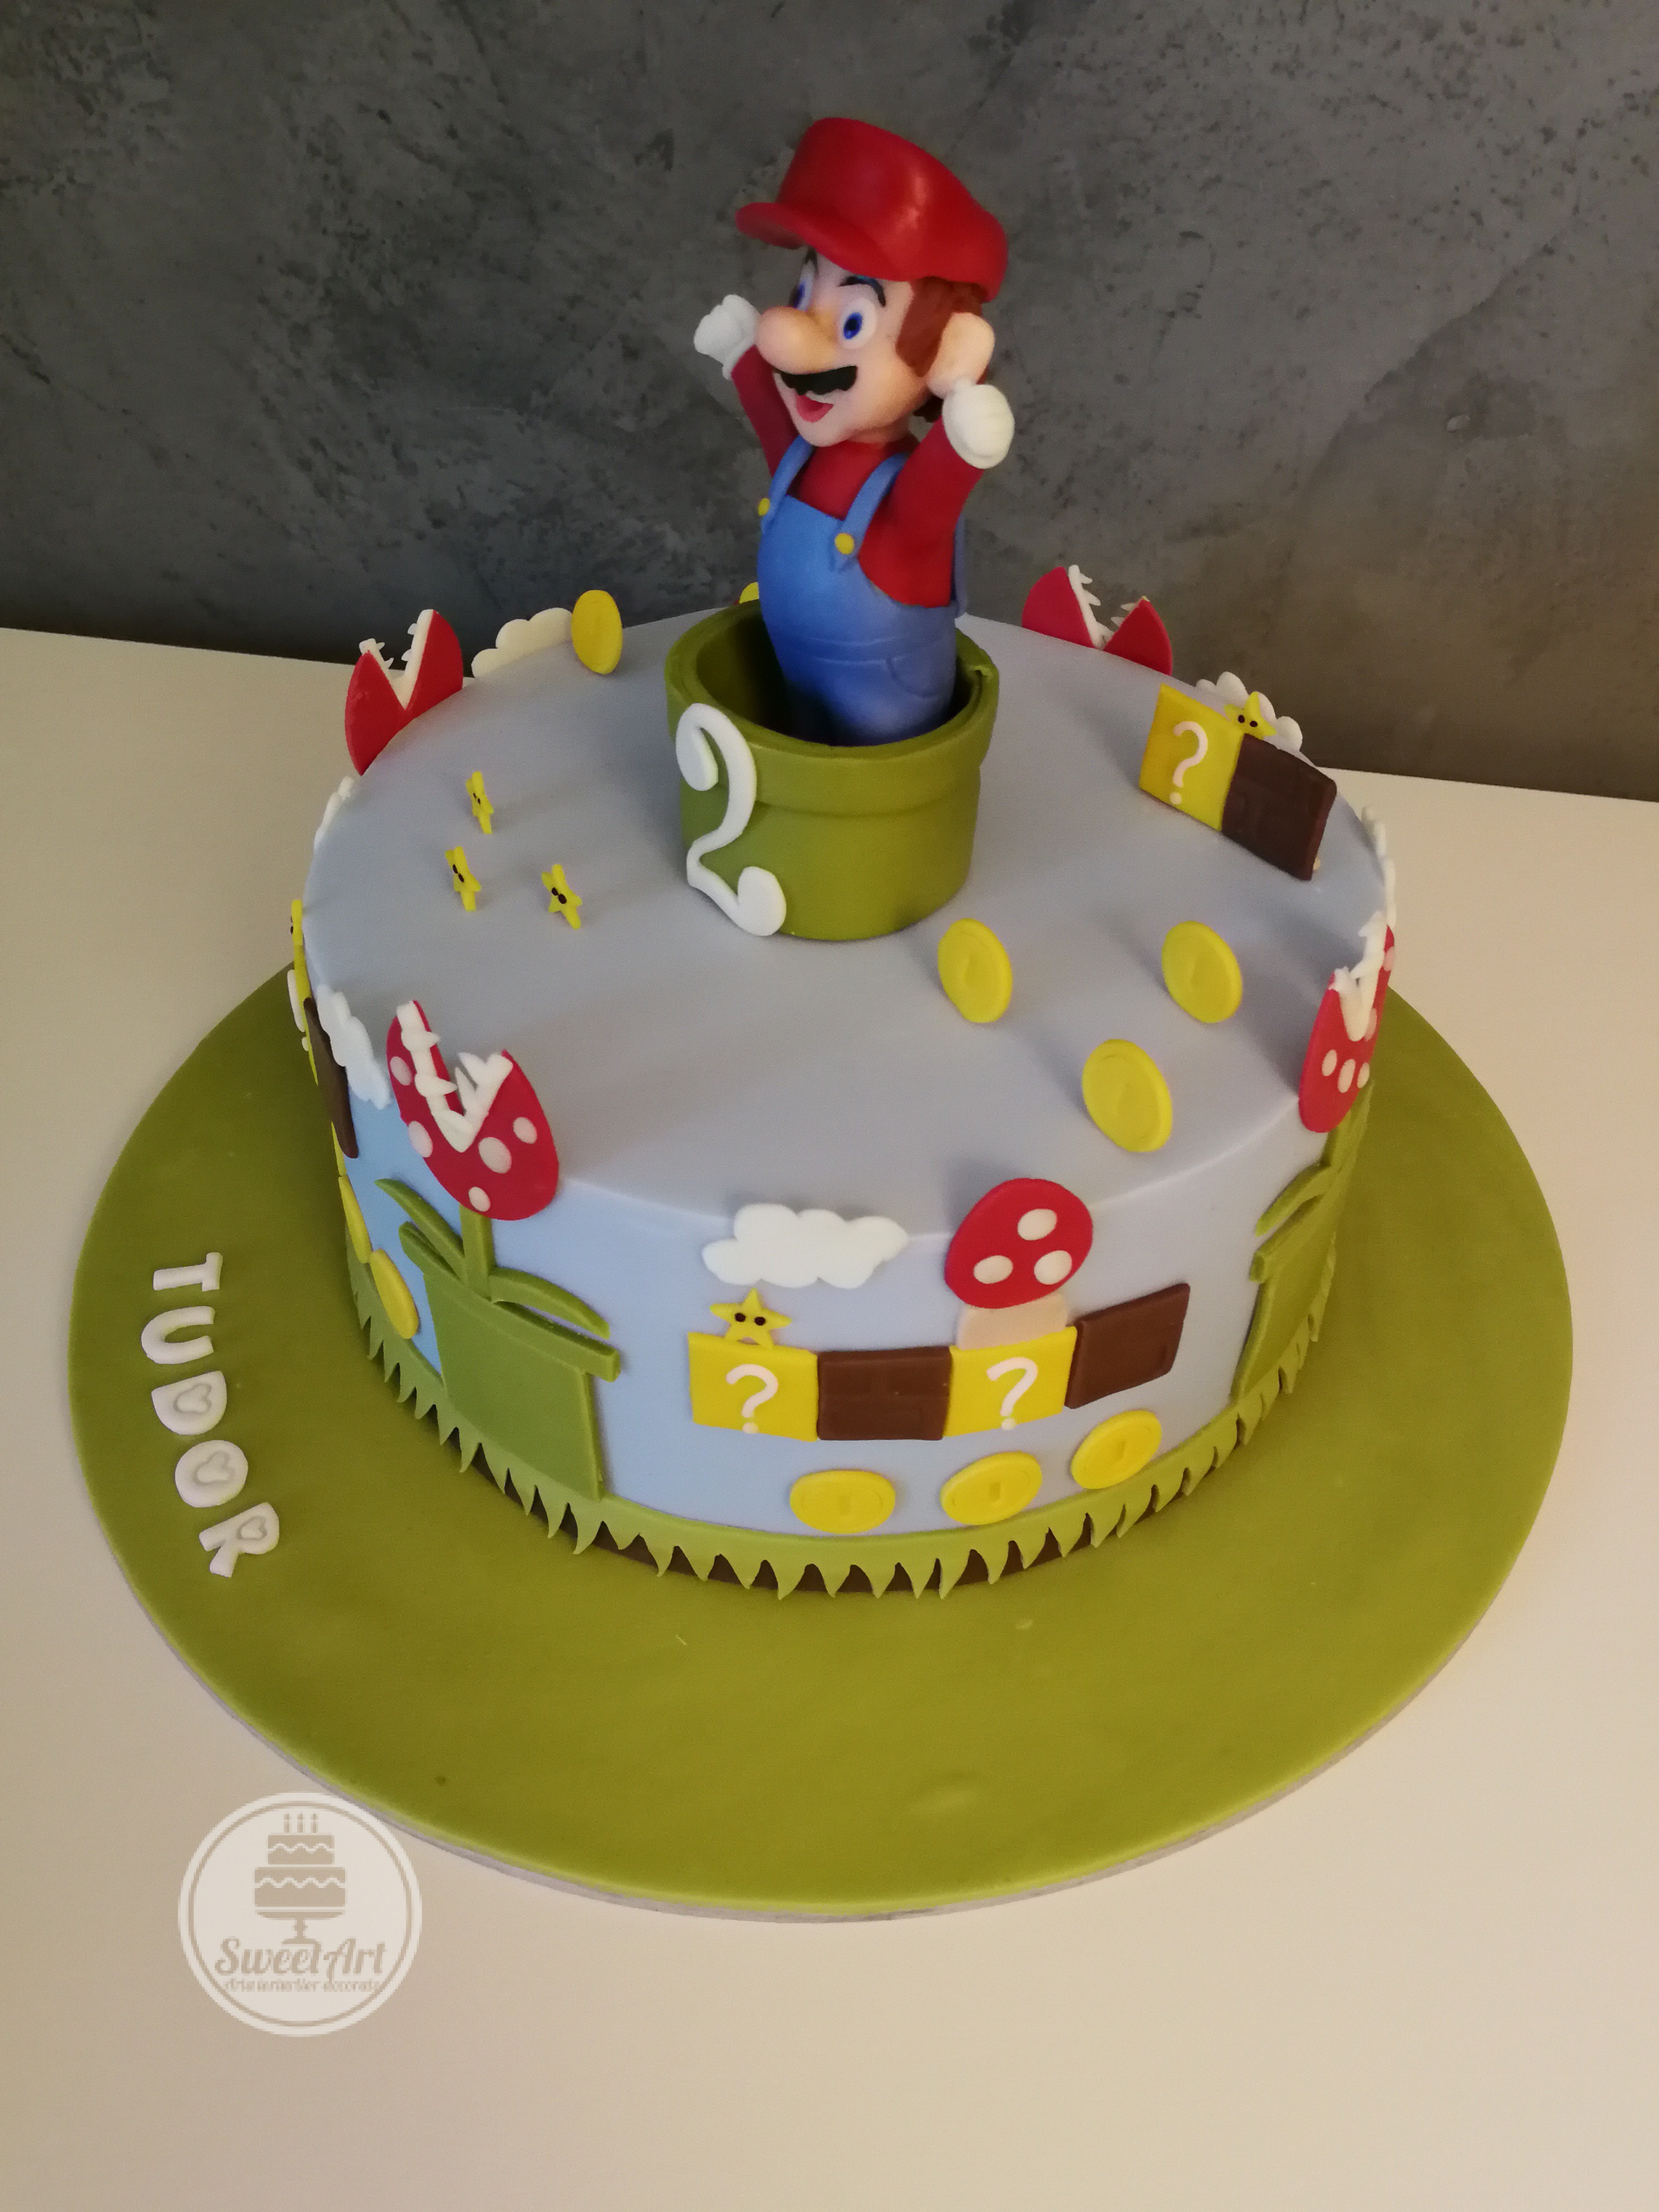 Tort Mario, joc video, conducte cu flori/plante carnivore, cărămizi, ciupercuțe, bănuți, steluțe, nori, norișori, pământ, iarbă